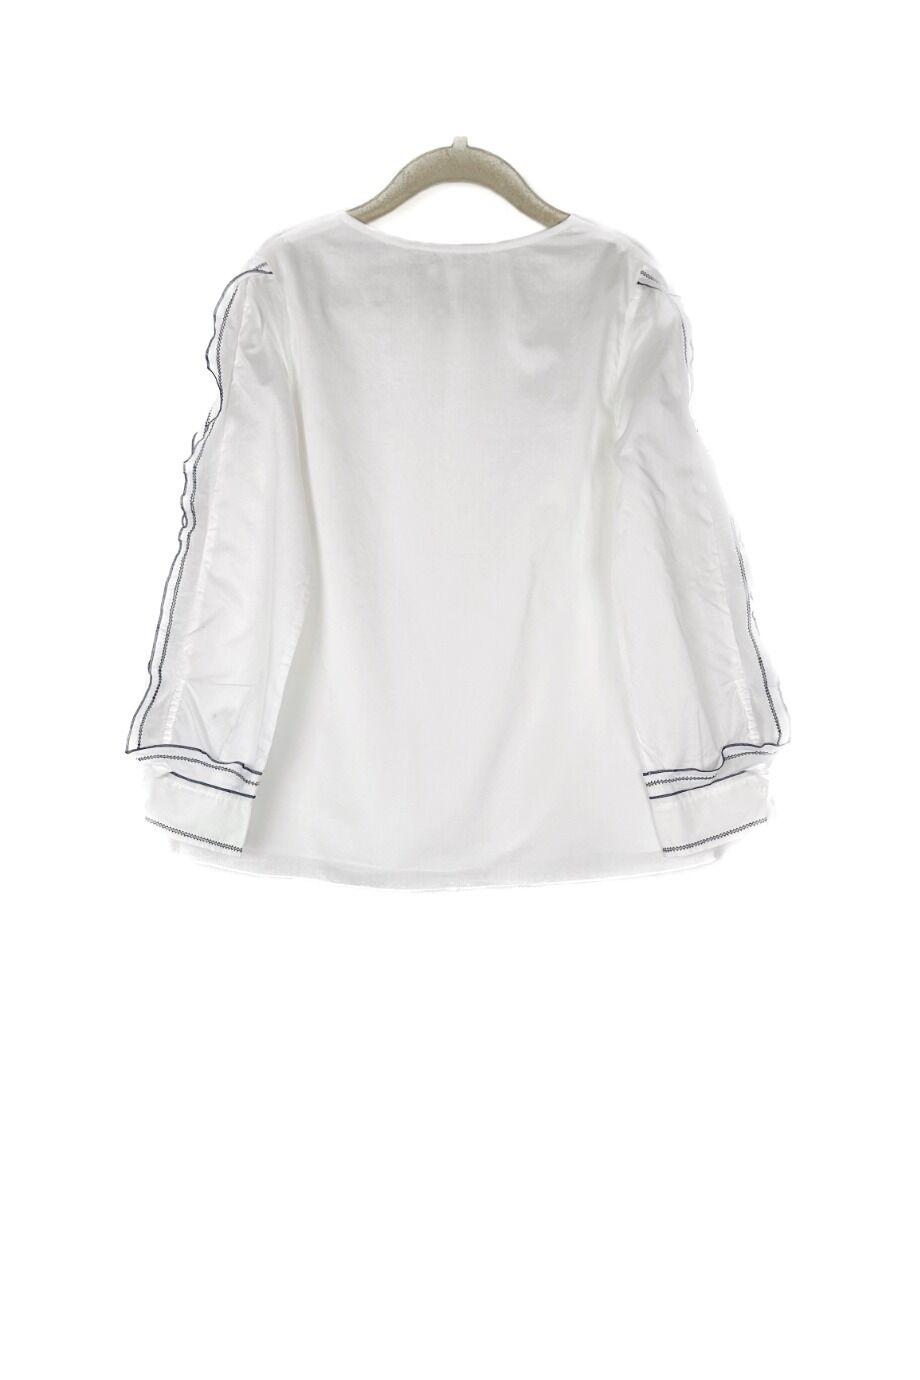 image 2 Детская блуза белого цвета с воланами на рукавах